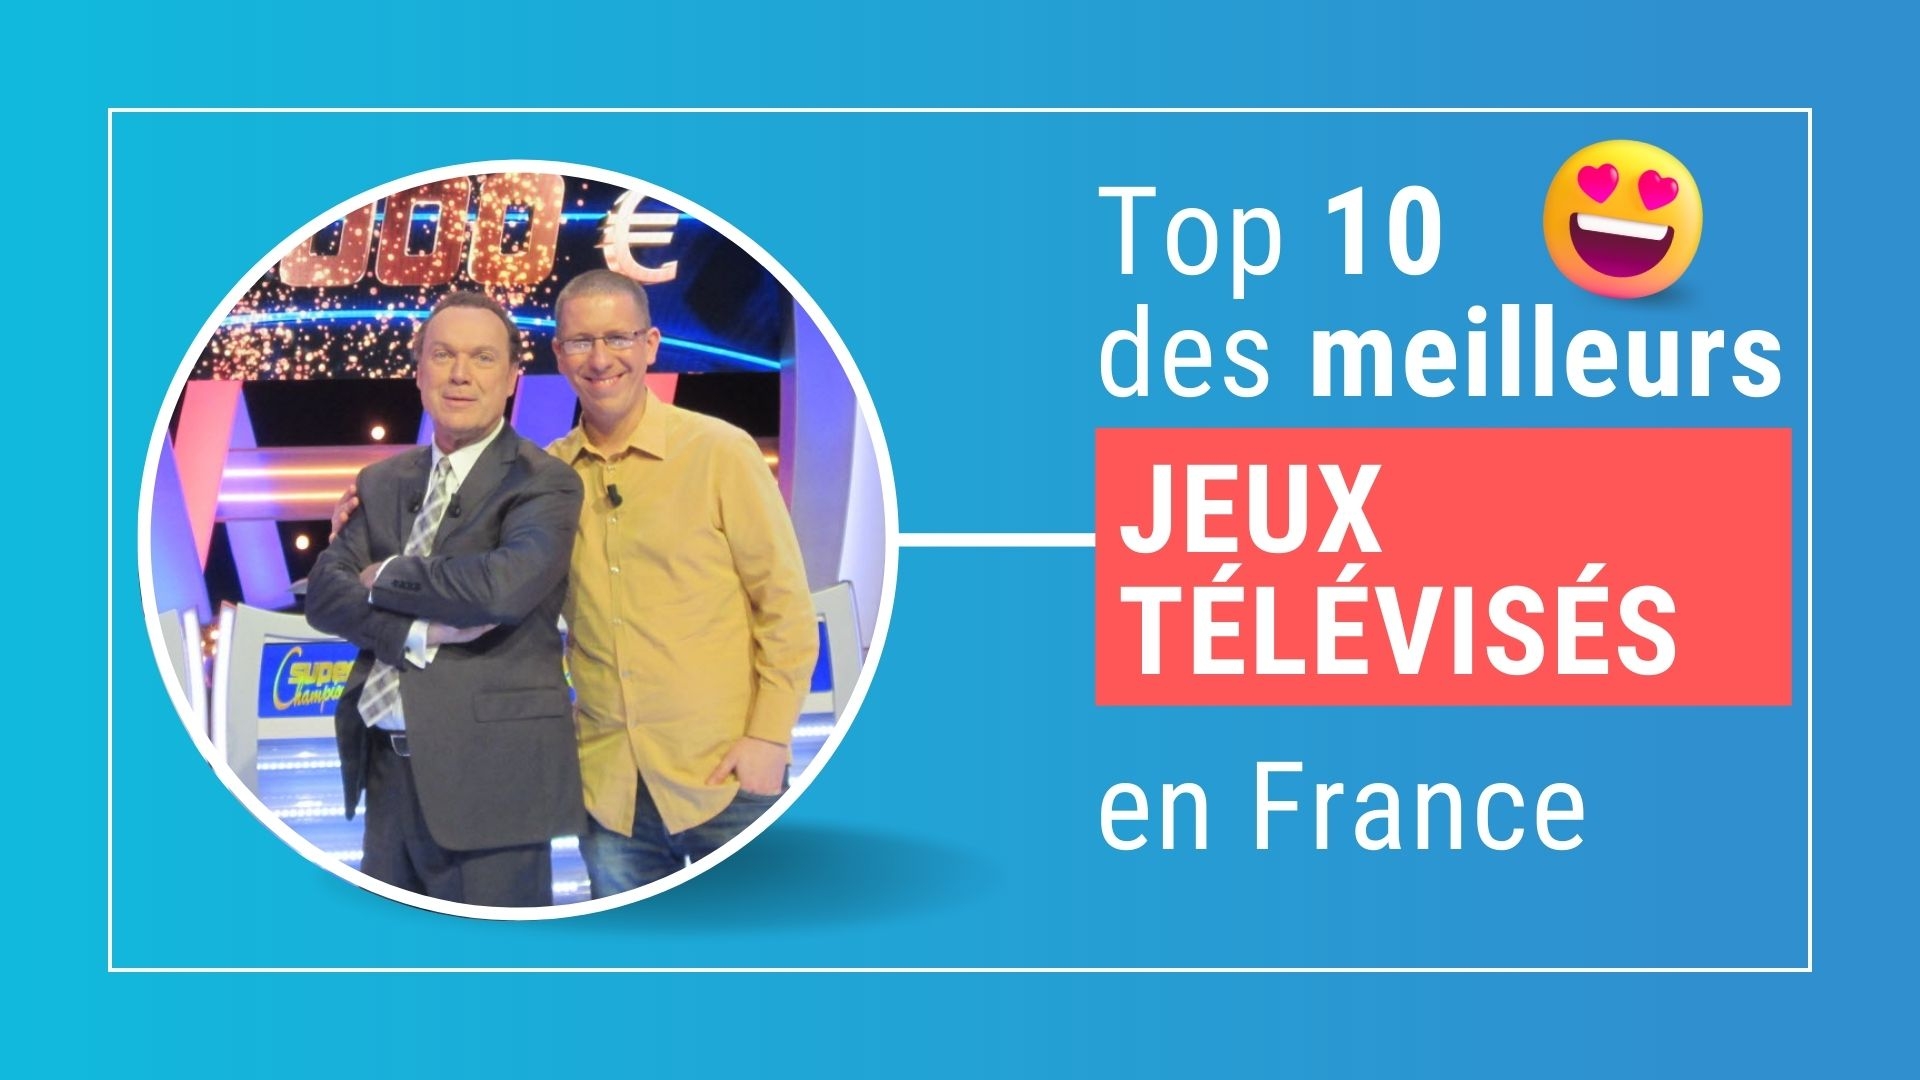 Top 10 des meilleurs jeux télévisés en France